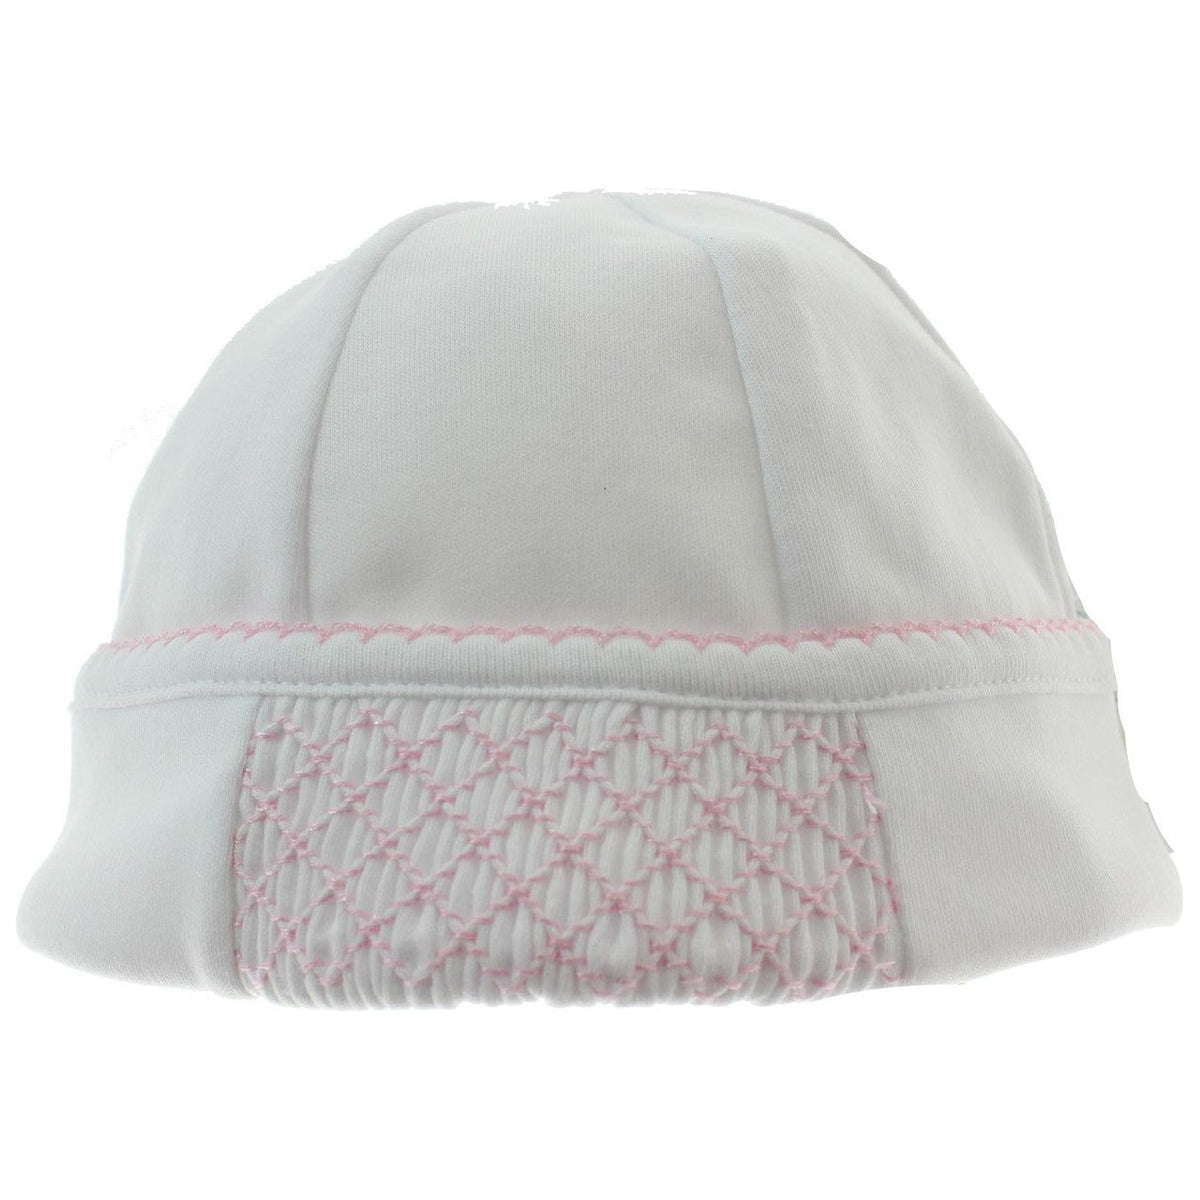 Girls White Hat with Pink Smocking